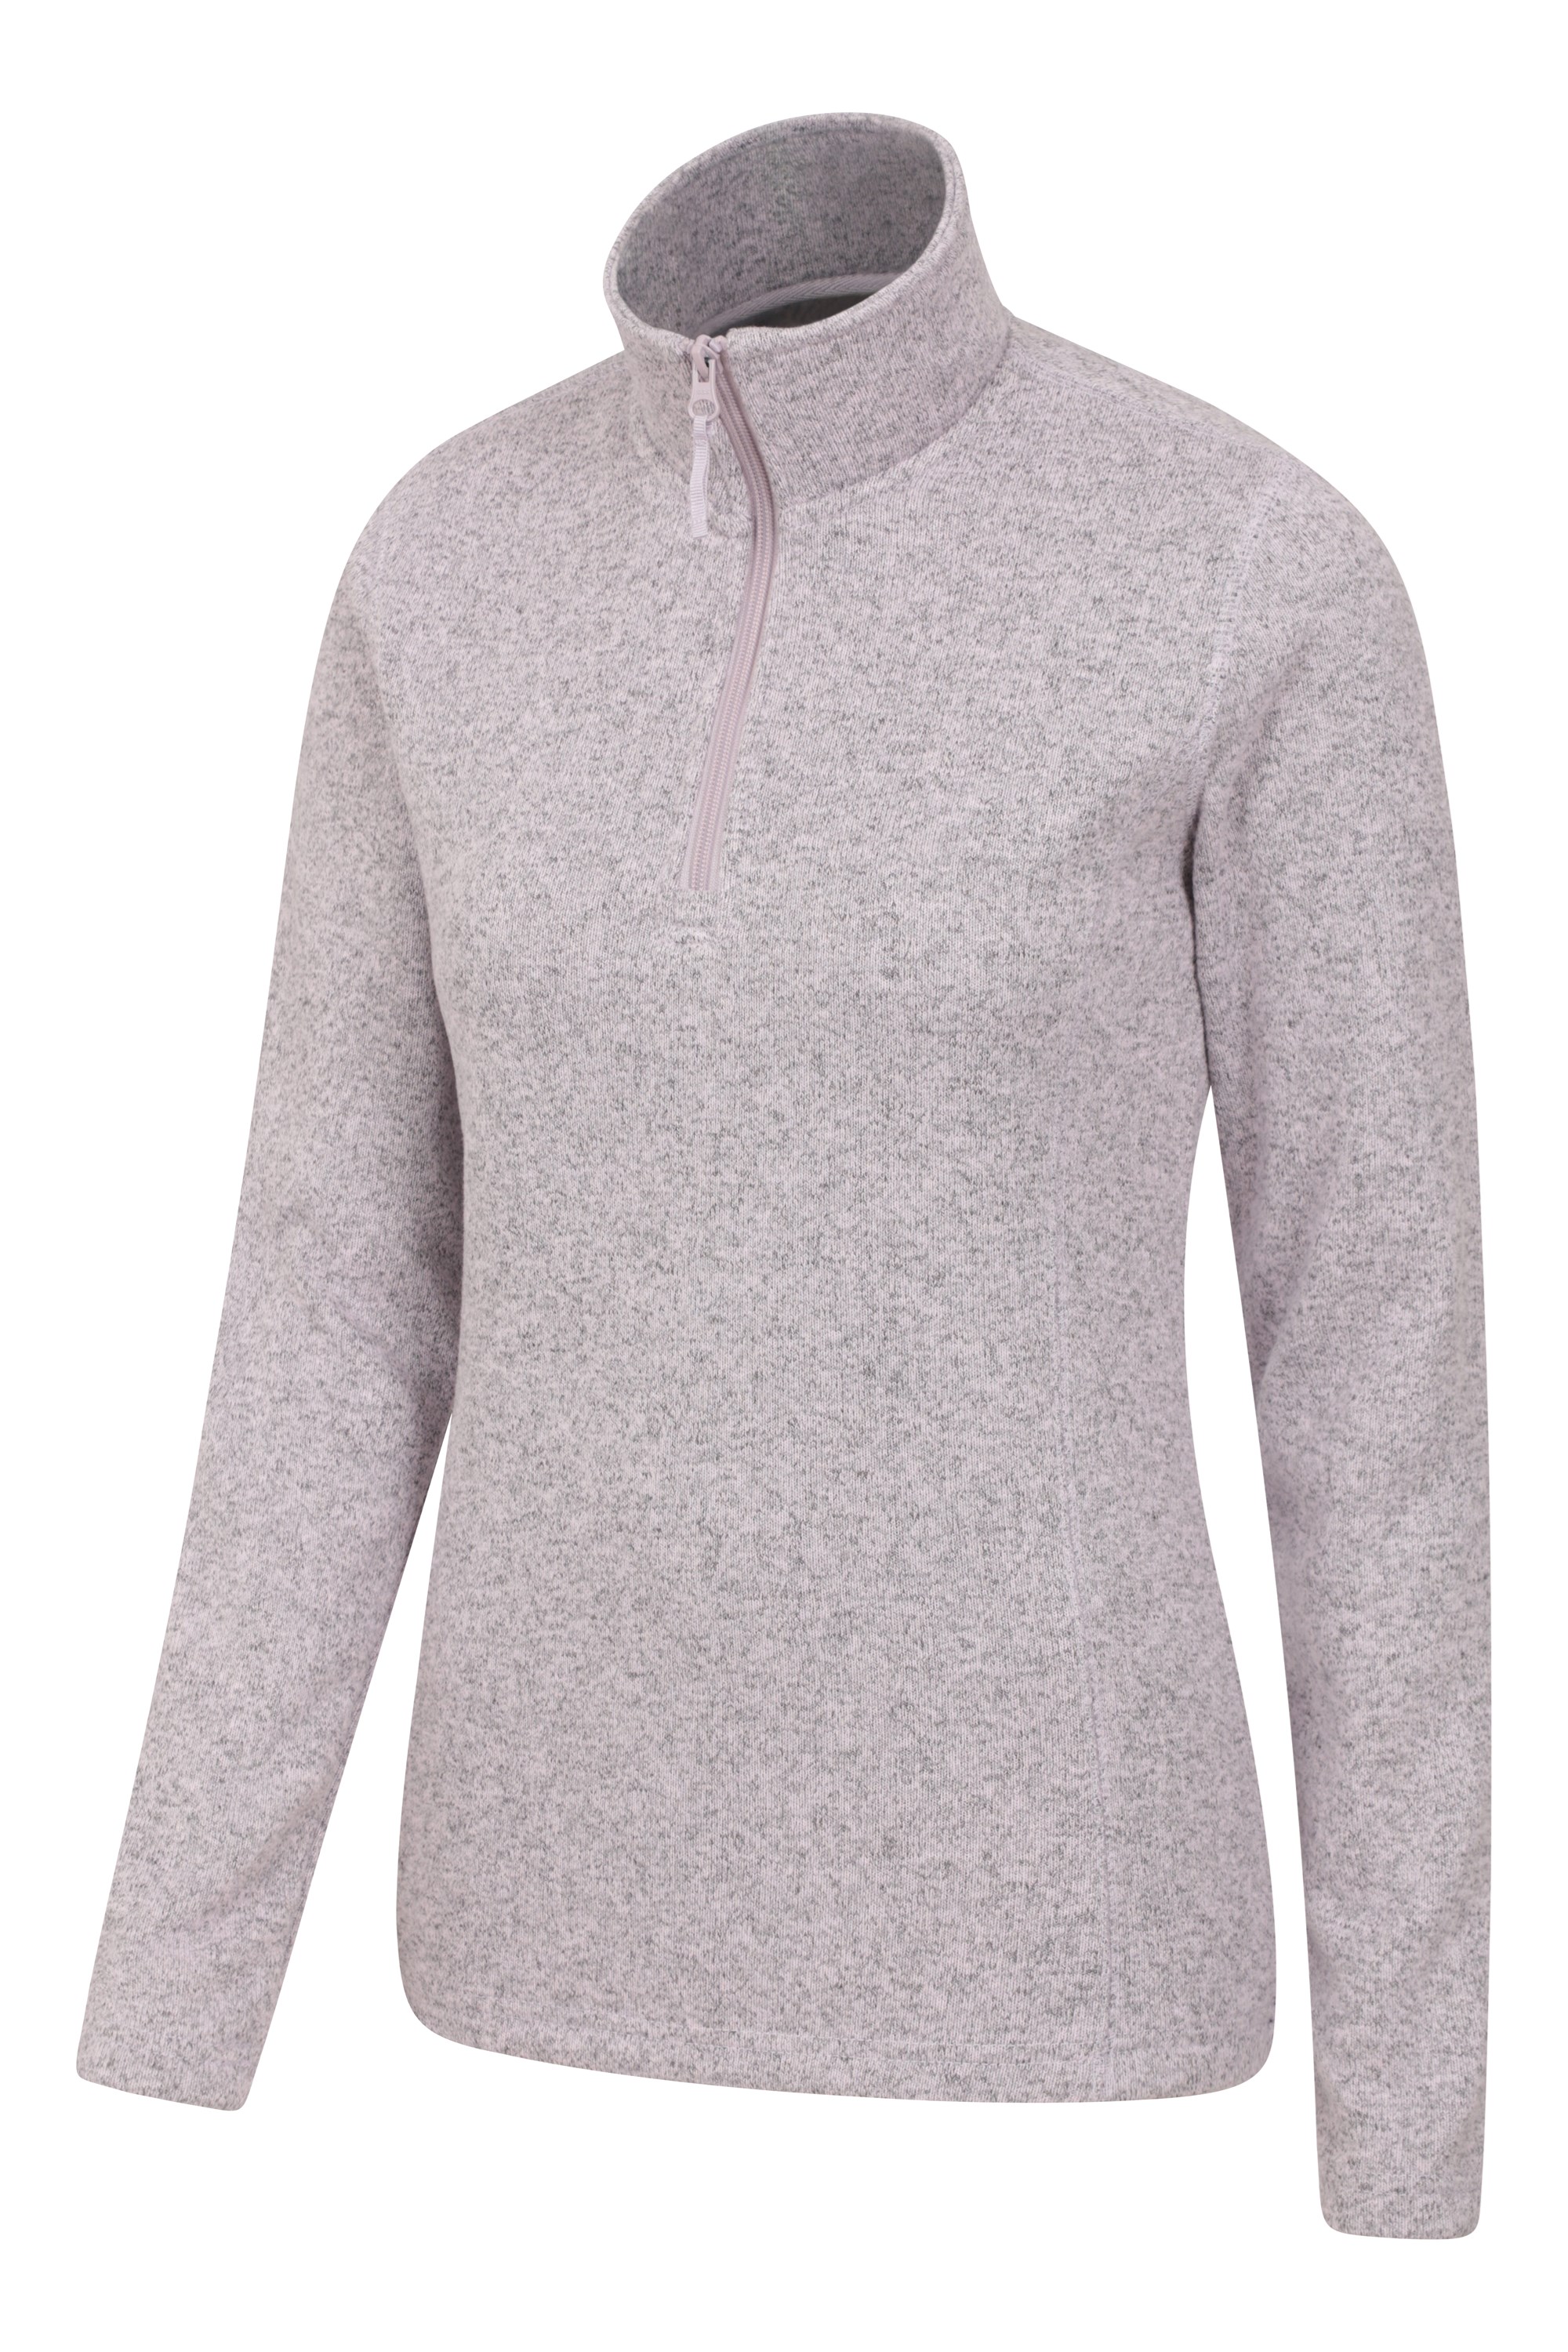 Rabatt 87 % Rot 50 Mountain warehouse Pullover DAMEN Pullovers & Sweatshirts Pullover Fleece 